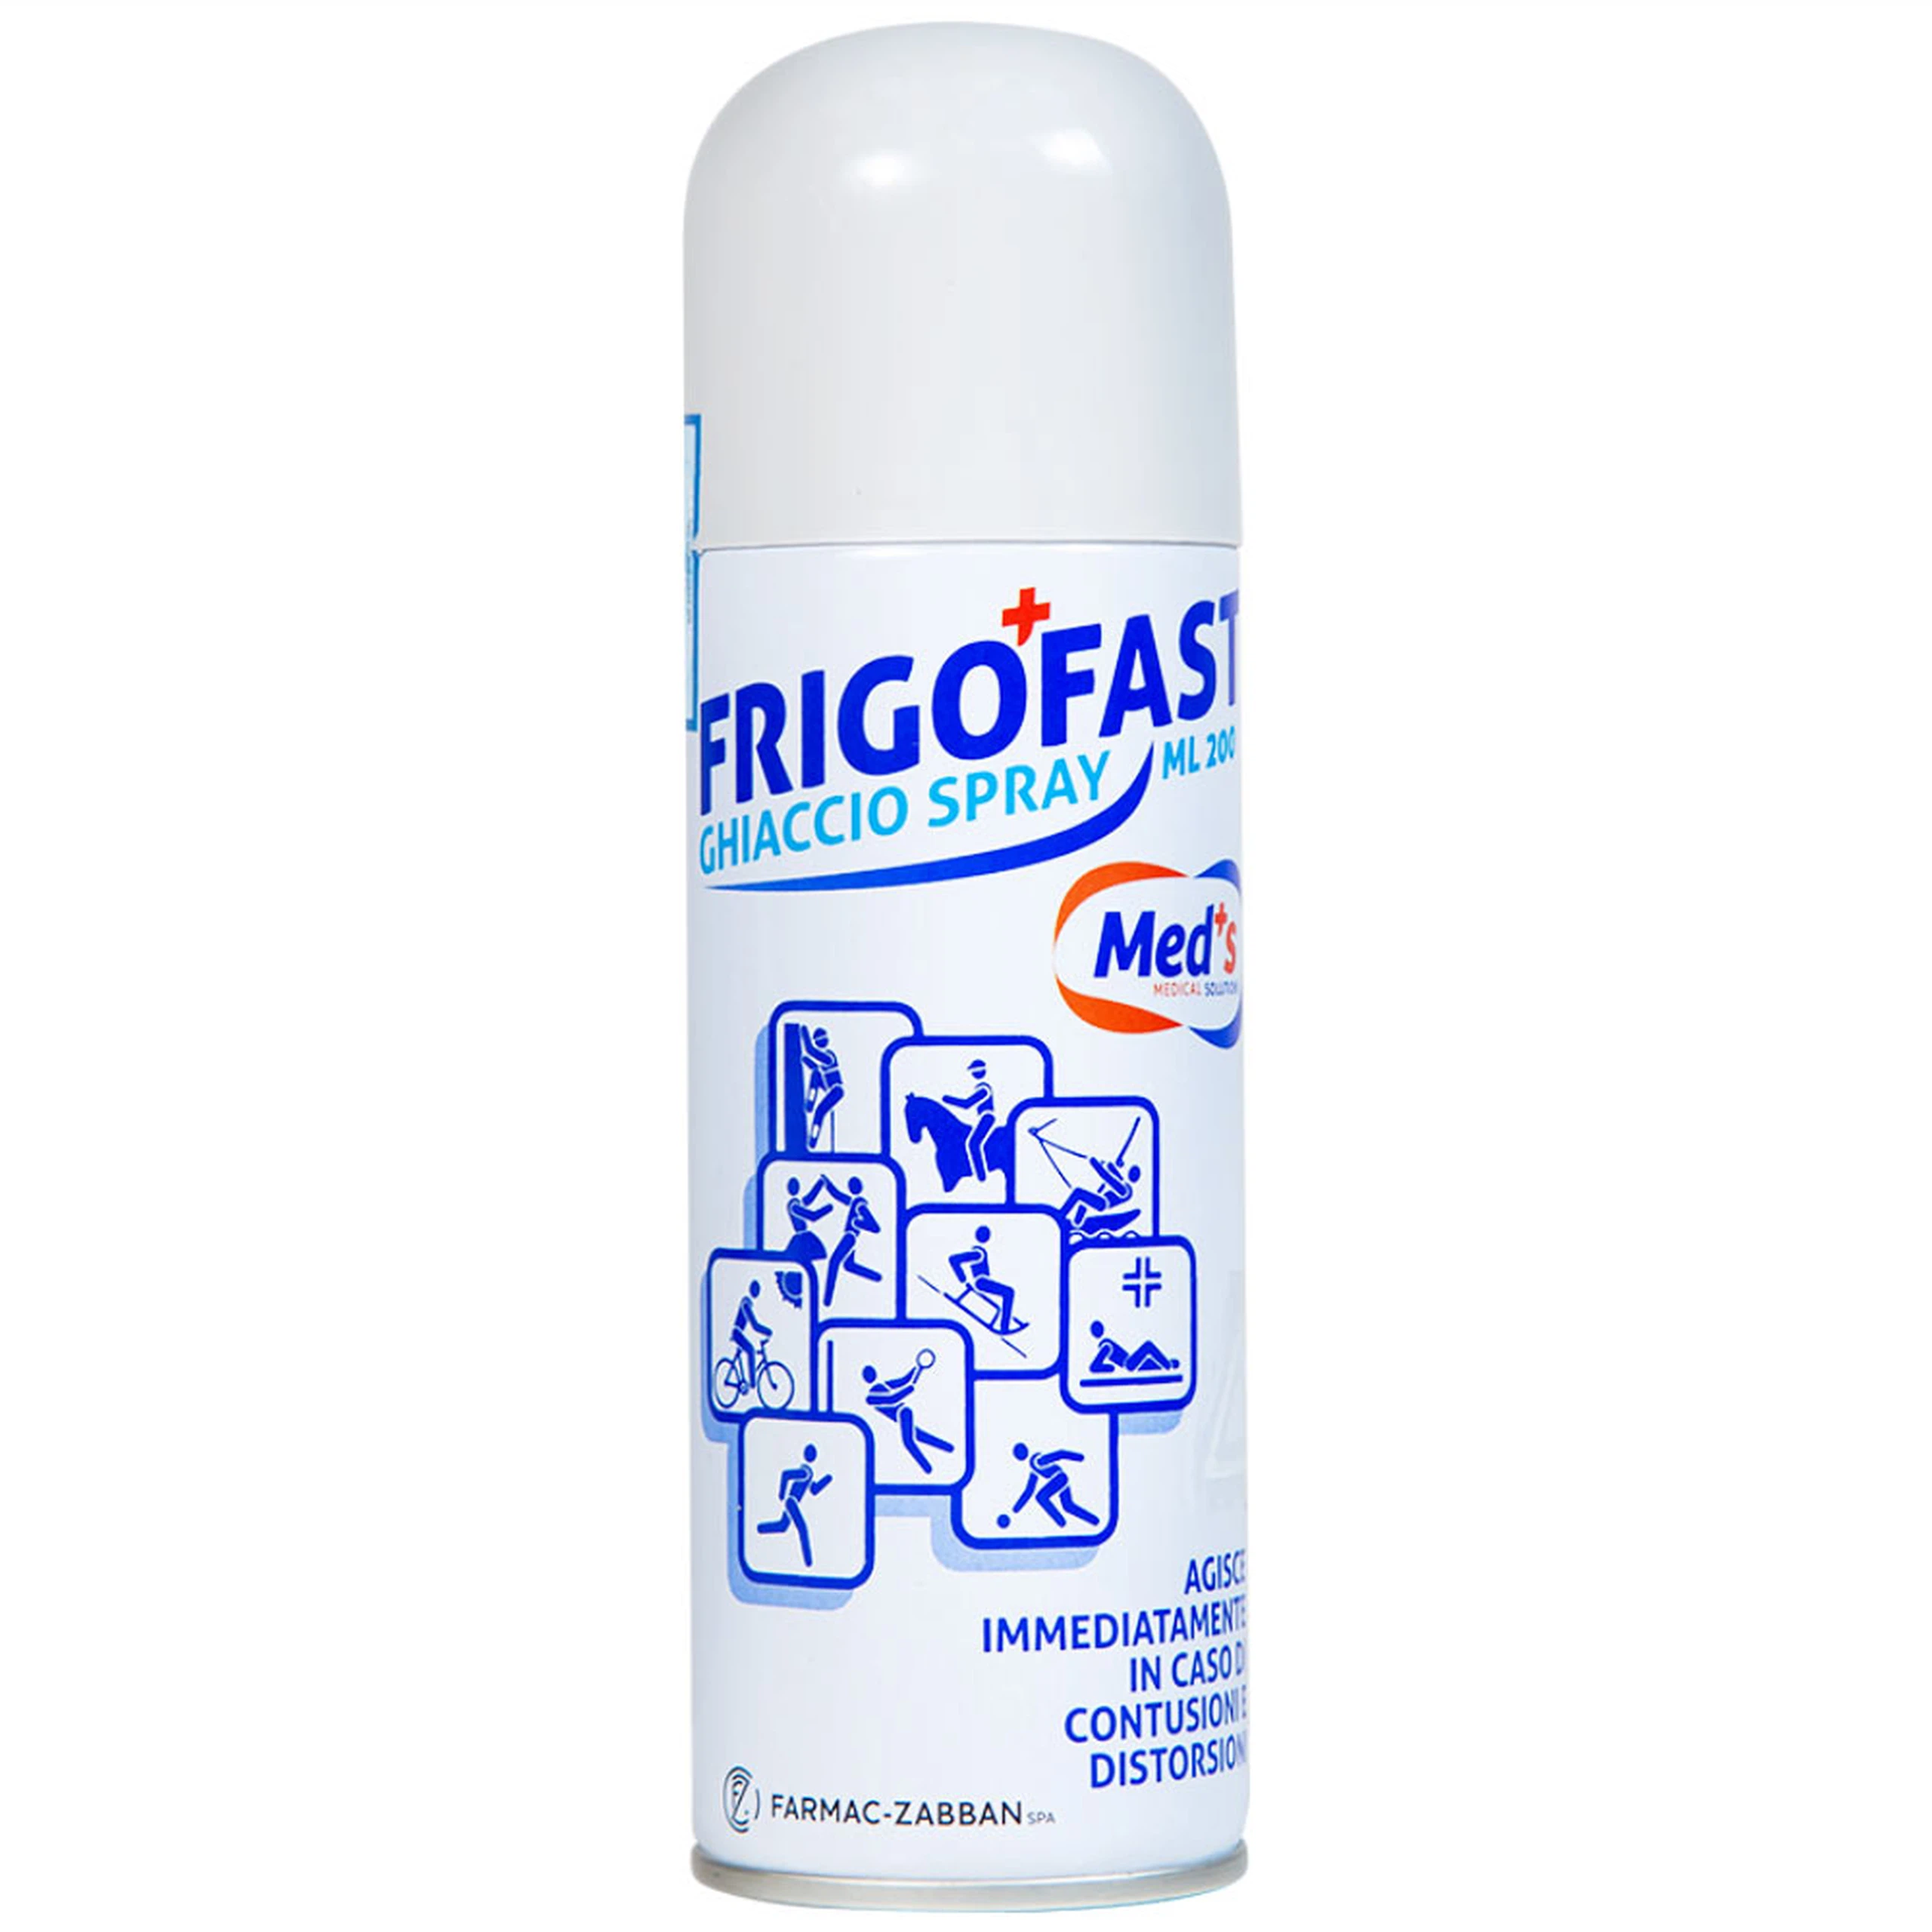 Chai xịt lạnh Frigofast Spray giảm đau bong gân, căng cơ, giãn dây chằng (200ml)